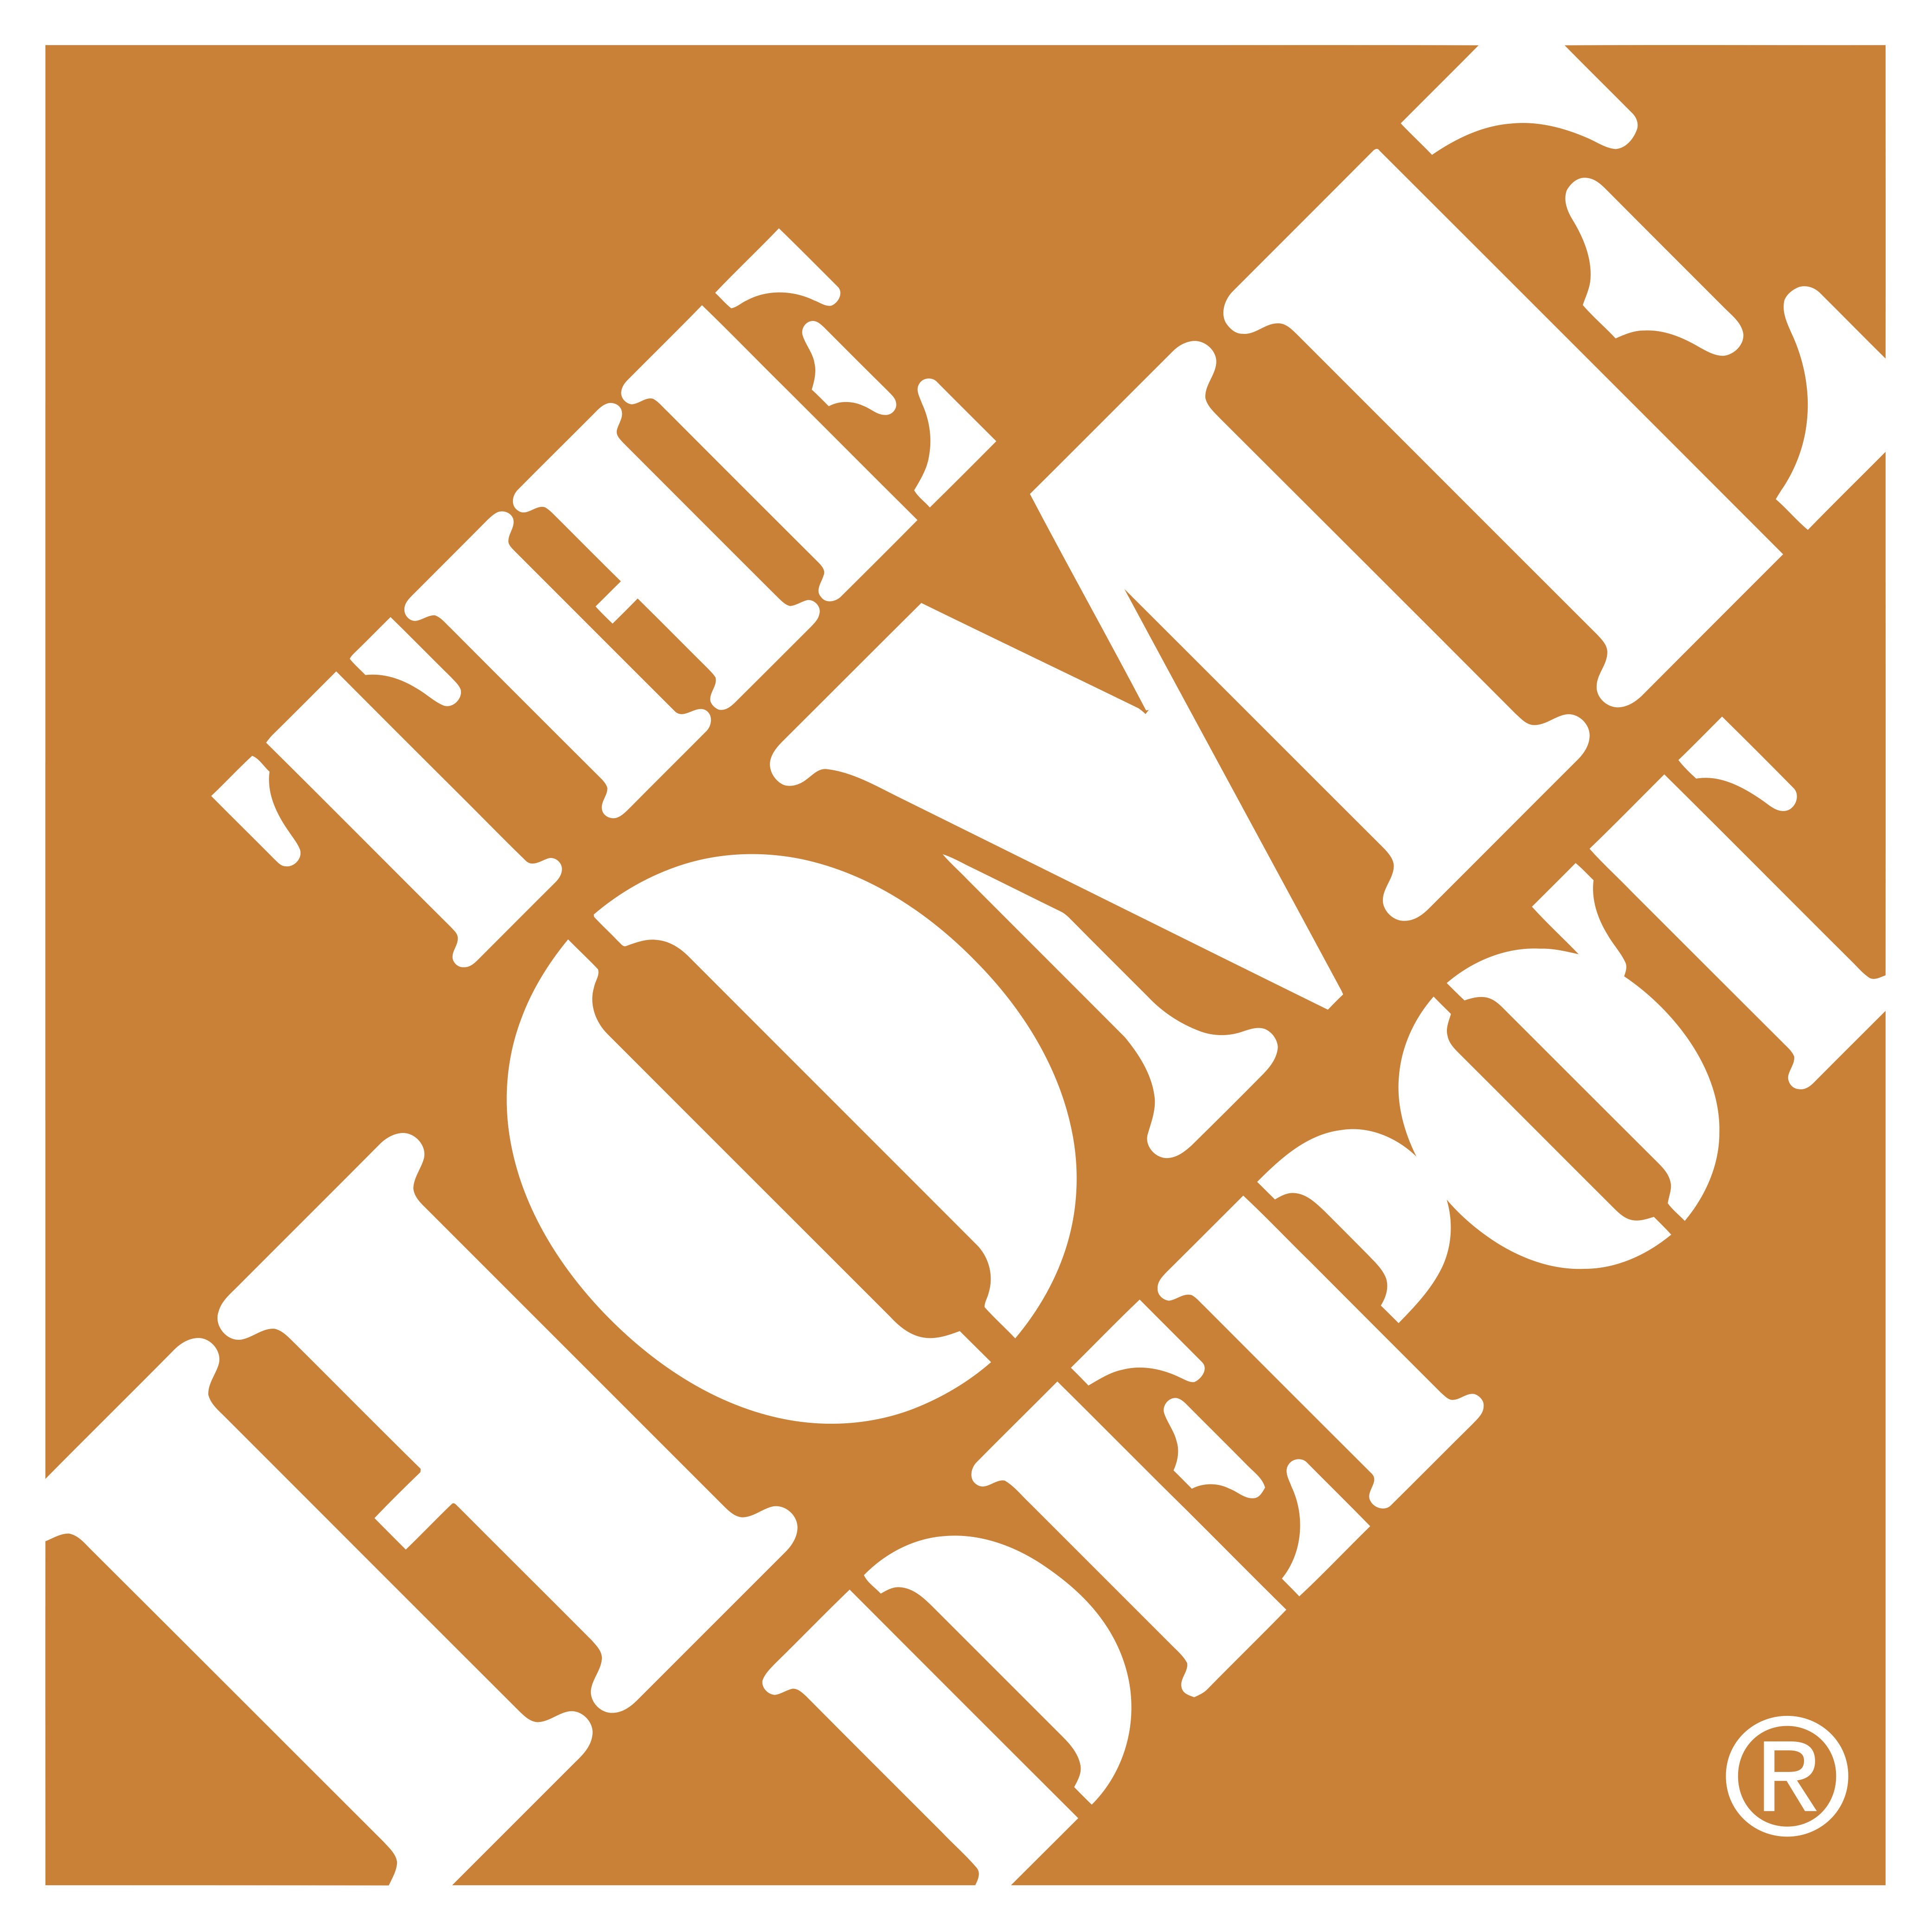 El logo The Home Depot fue diseñado desde su creación, y aunque permanece igual desde entonces, su elección fue difícil de hacer.